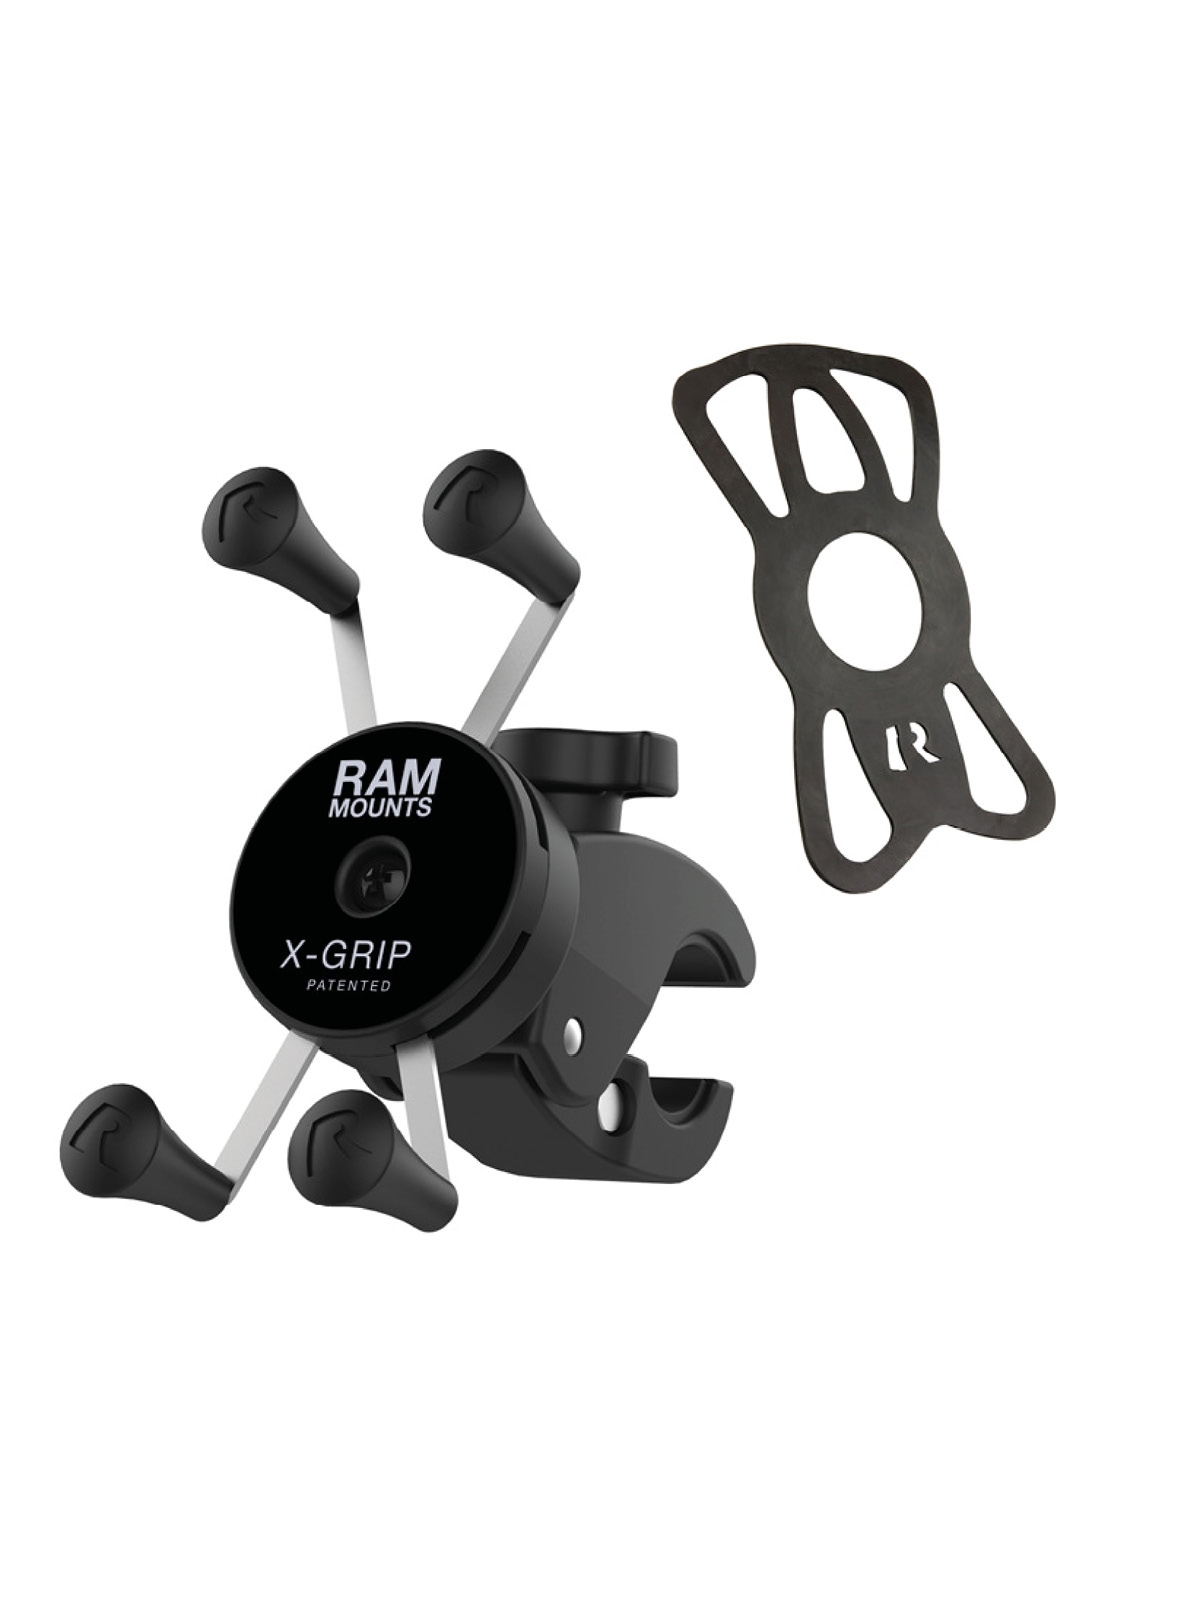 RAM Mounts X-Grip Halterung für Smartphones - kleine Tough-Claw (Durchmesser 15,9-29,0 mm), direkte X-Grip-Anbindung